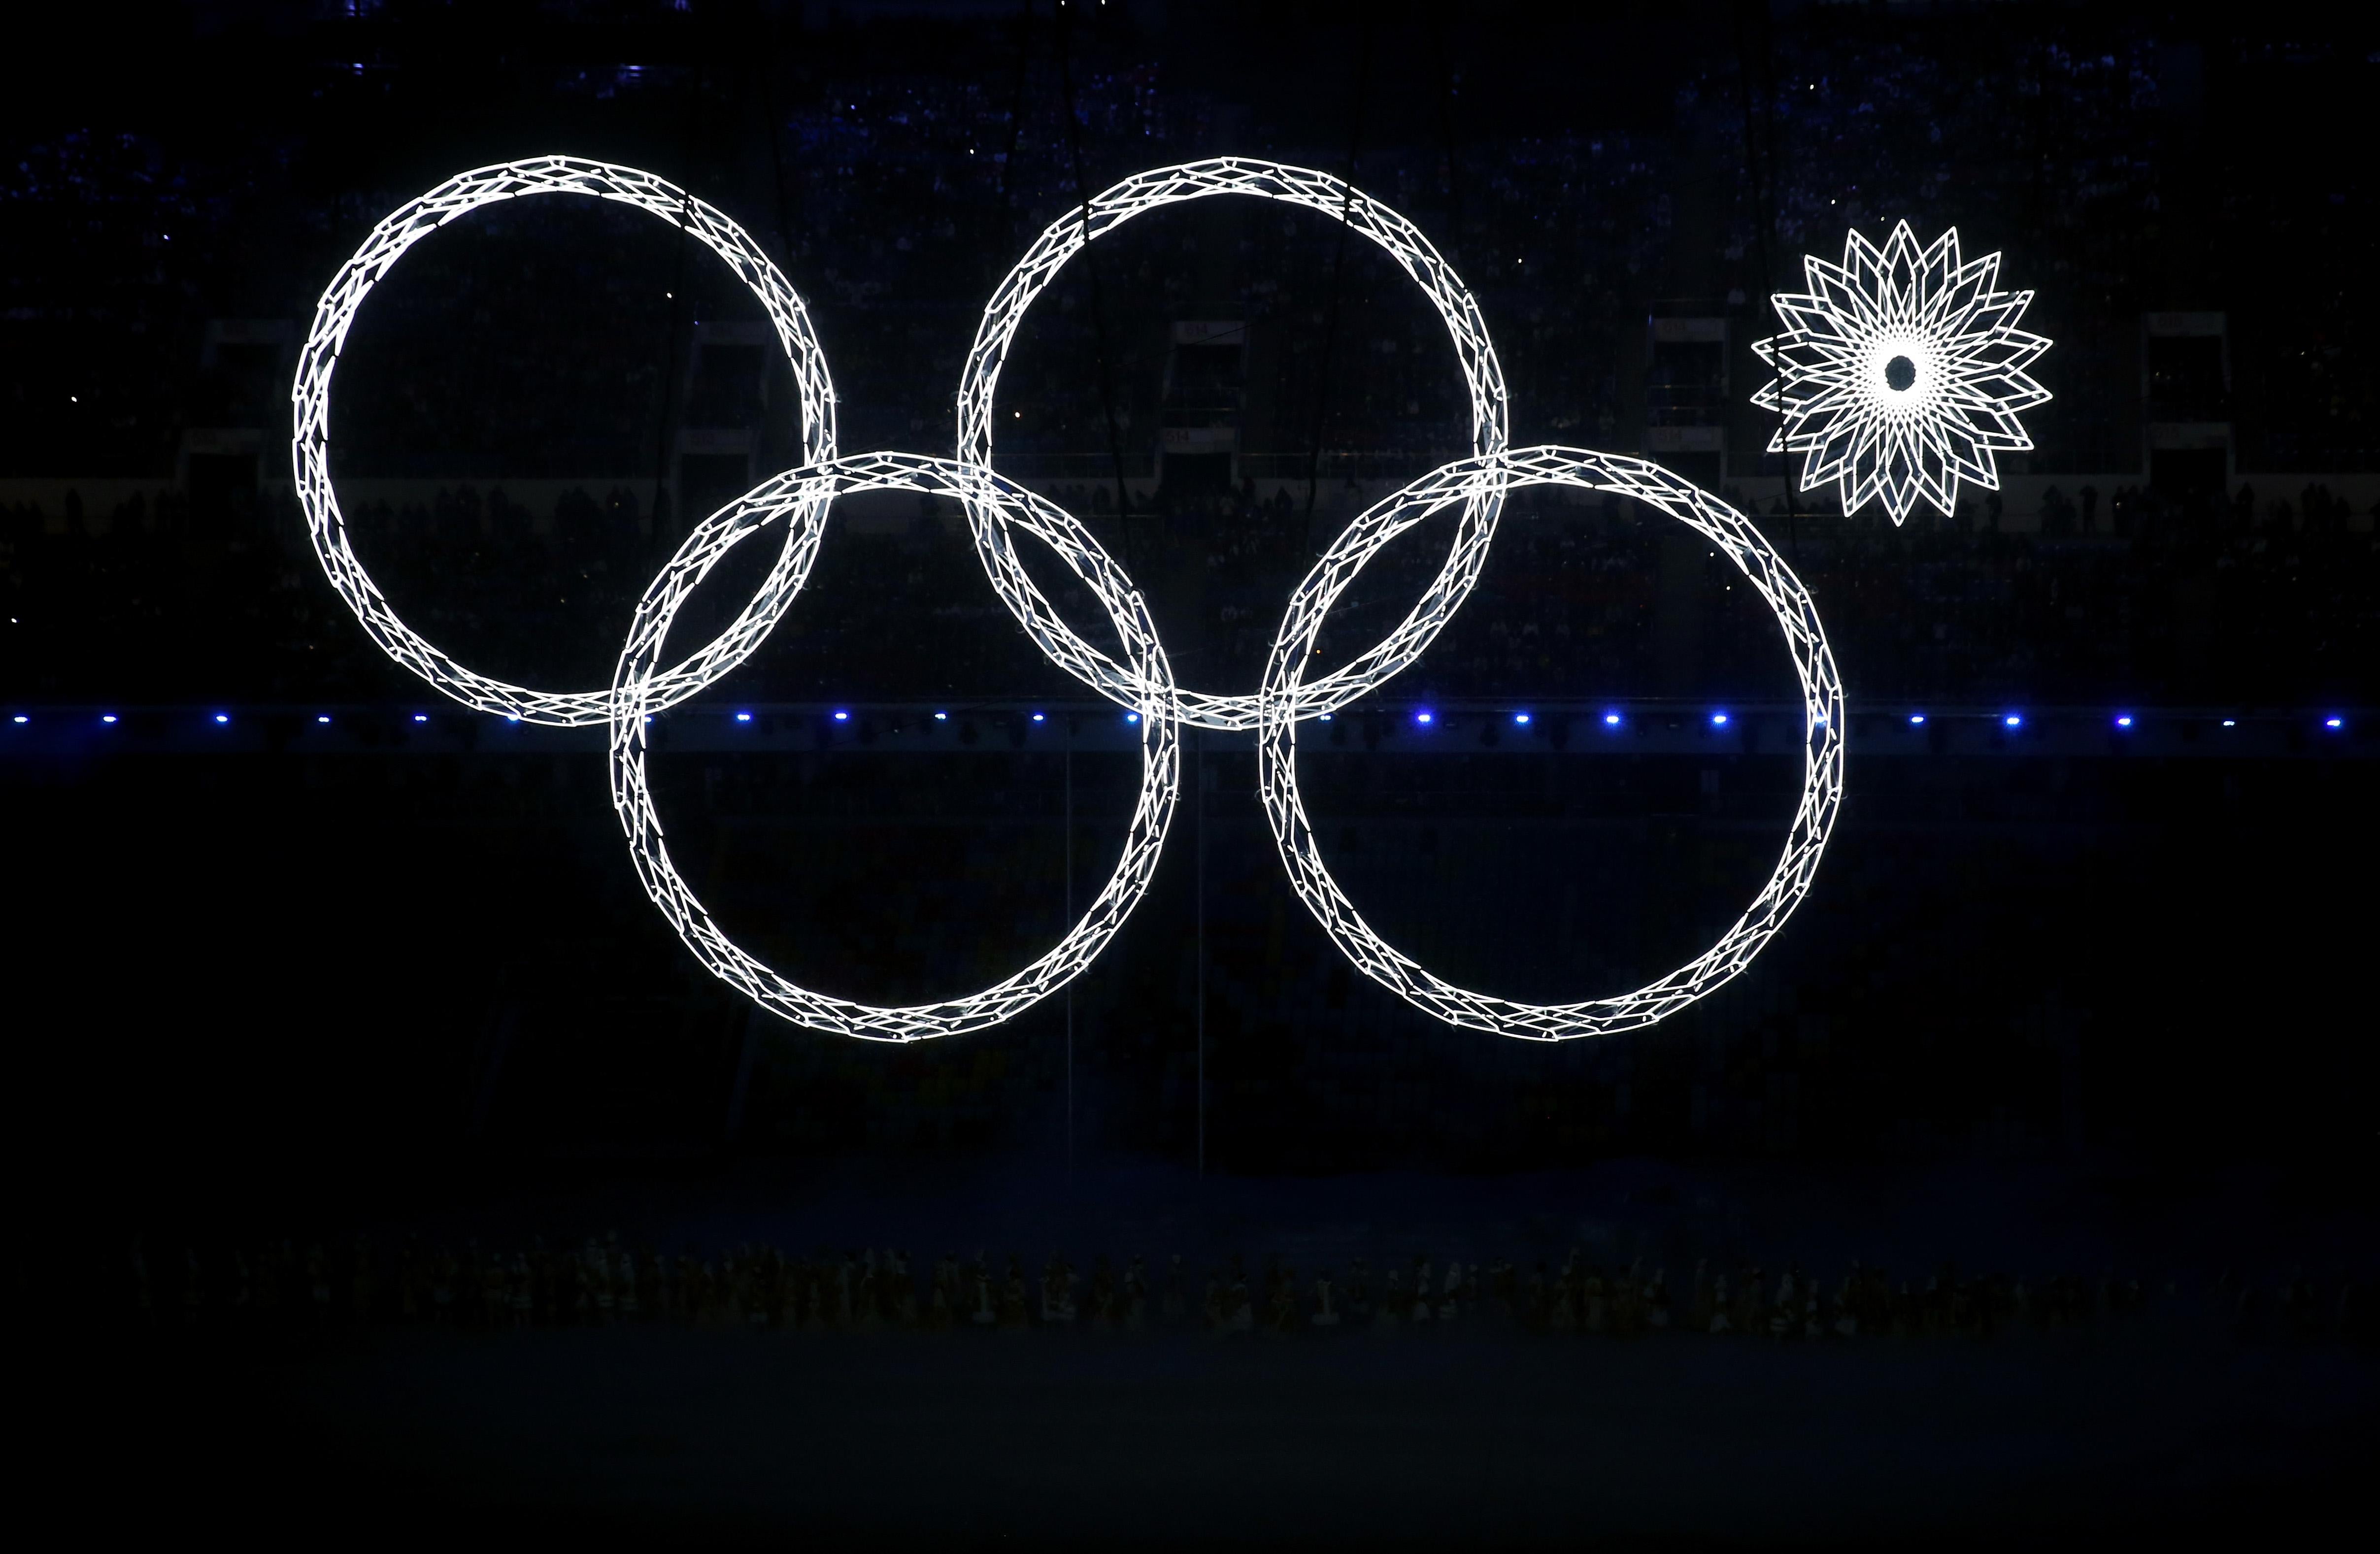 Игра в одно кольцо. Открытие олимпиады в Сочи 2014 кольцо не раскрылось. Олимпийские кольца Сочи 2014. Нераскрывшееся кольцо на Олимпиаде.